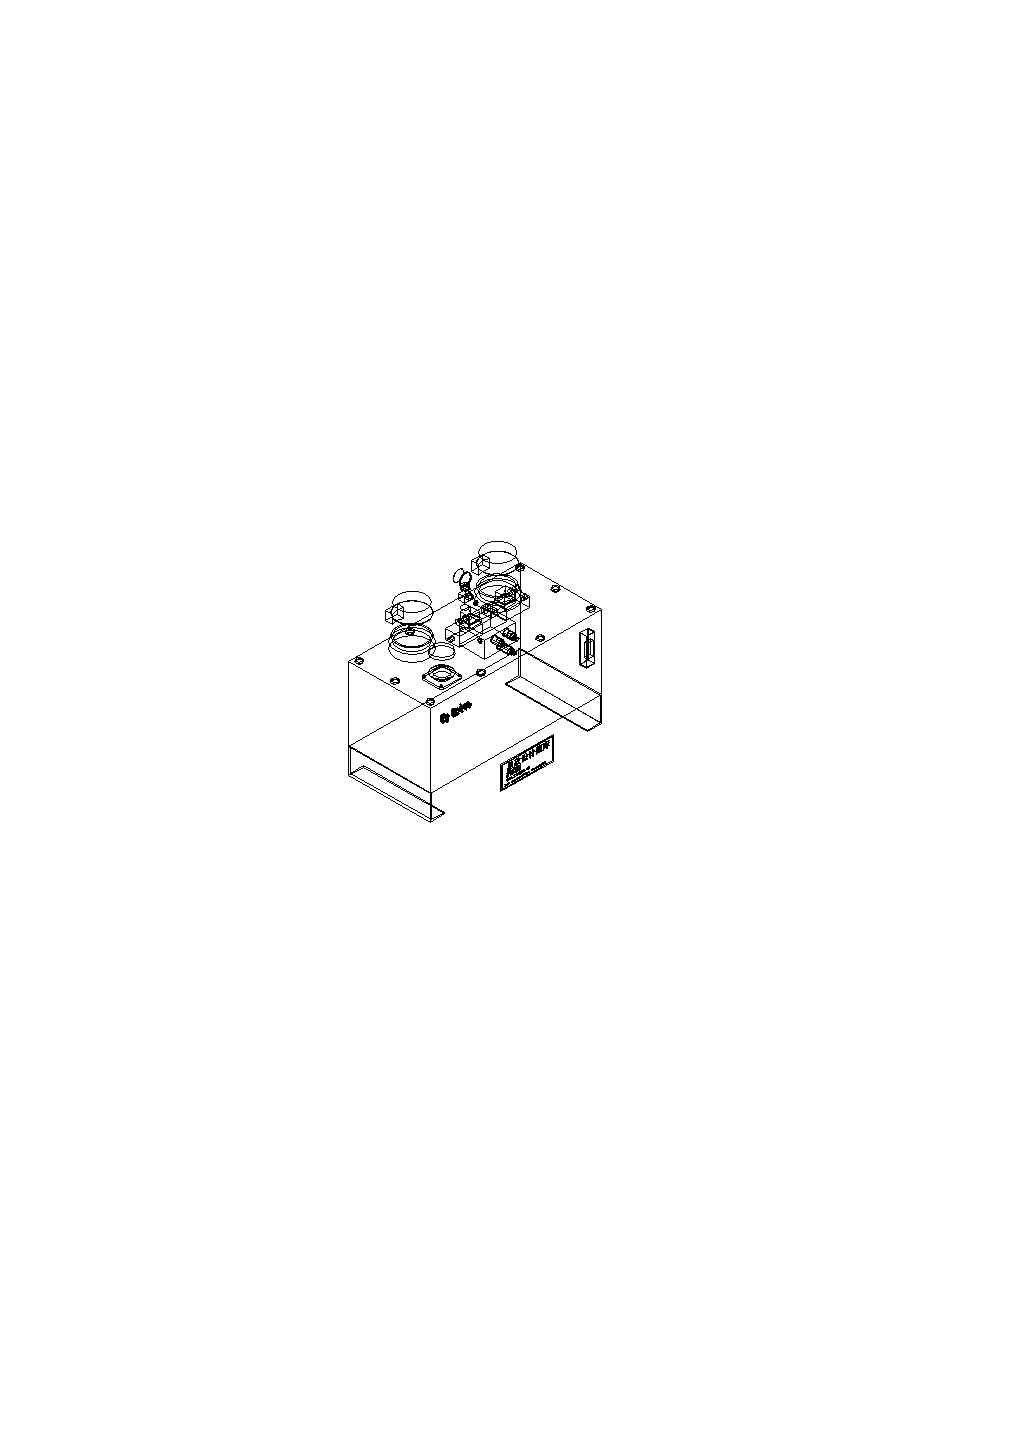 最新整理的CAD设计油泵立体图